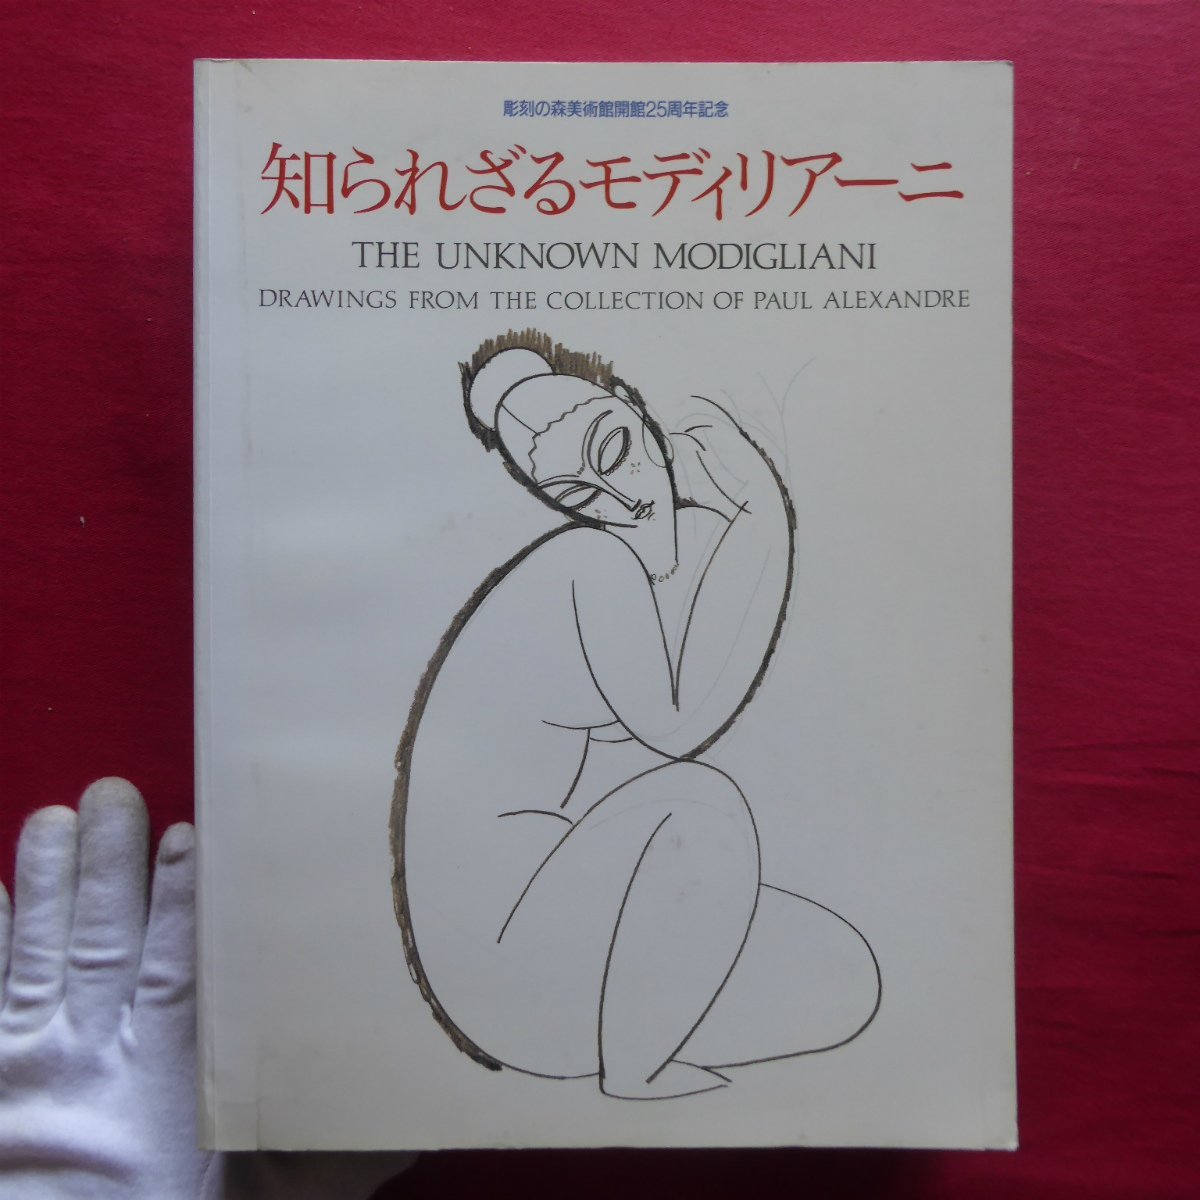 R grande [El Modigliani desconocido: Colección Paul Alexandre/Museo al aire libre de Hakone, etc., 1994], Cuadro, Libro de arte, Recopilación, Libro de arte